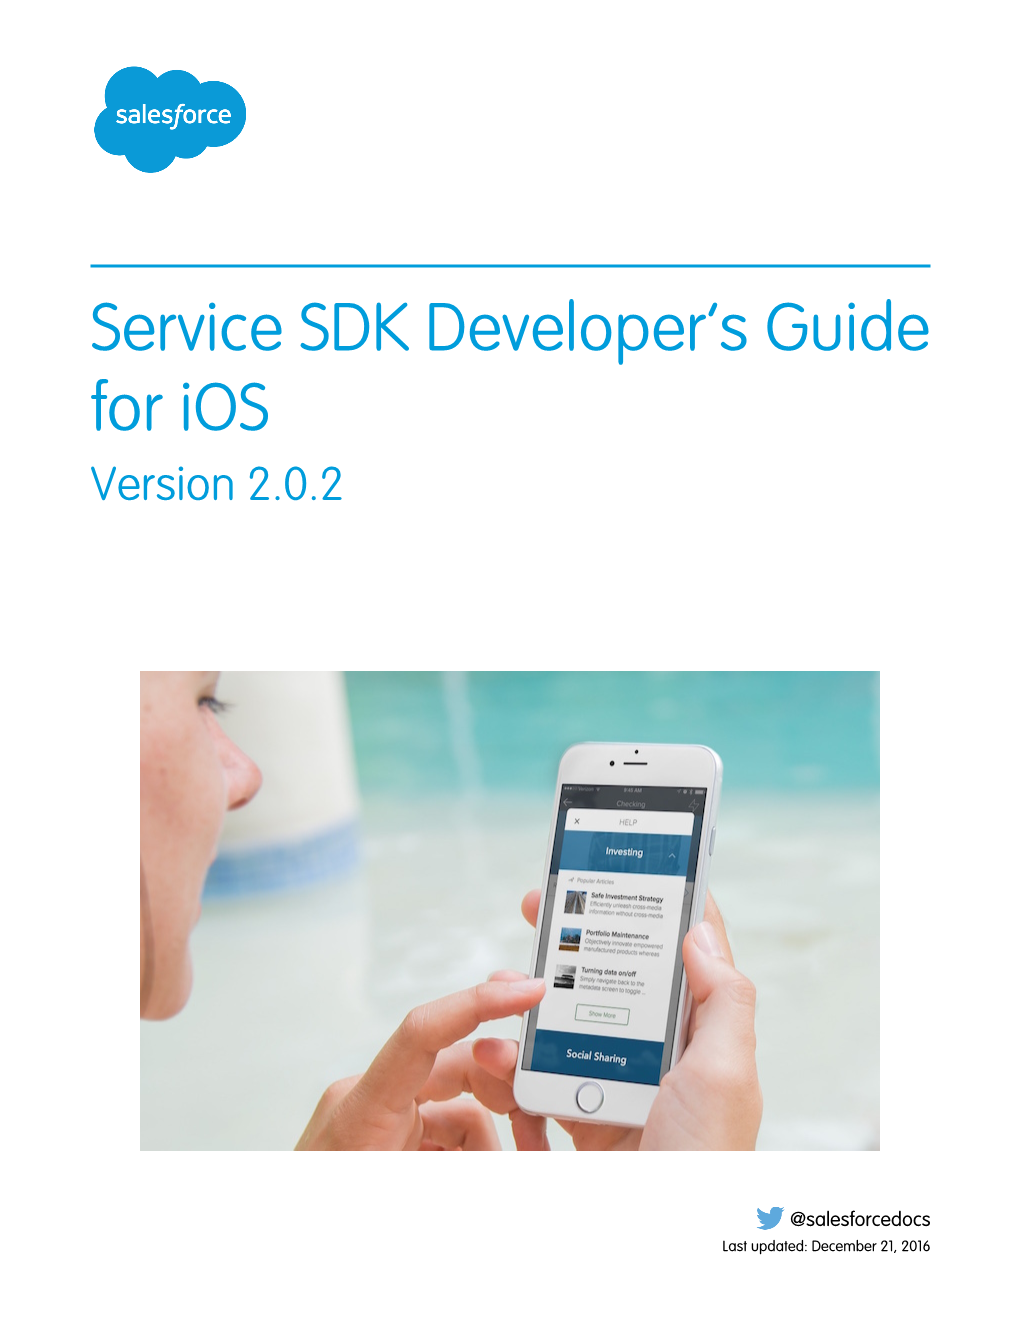 Service SDK Developer's Guide For